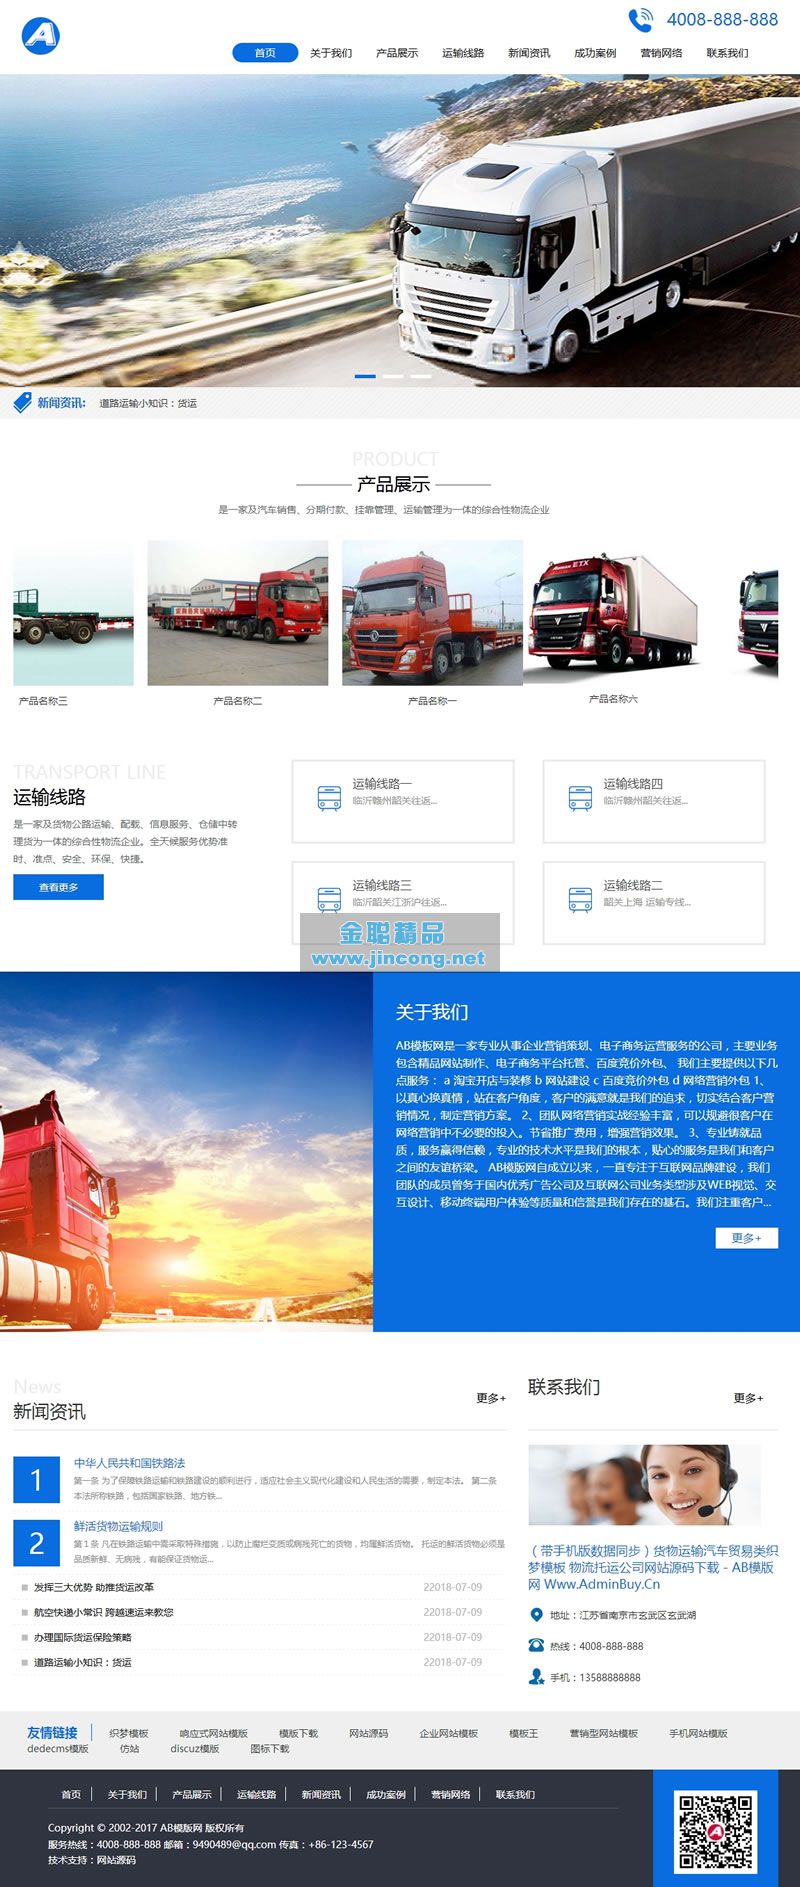 货物运输汽车贸易类网站源码 物流托运公司织梦模板